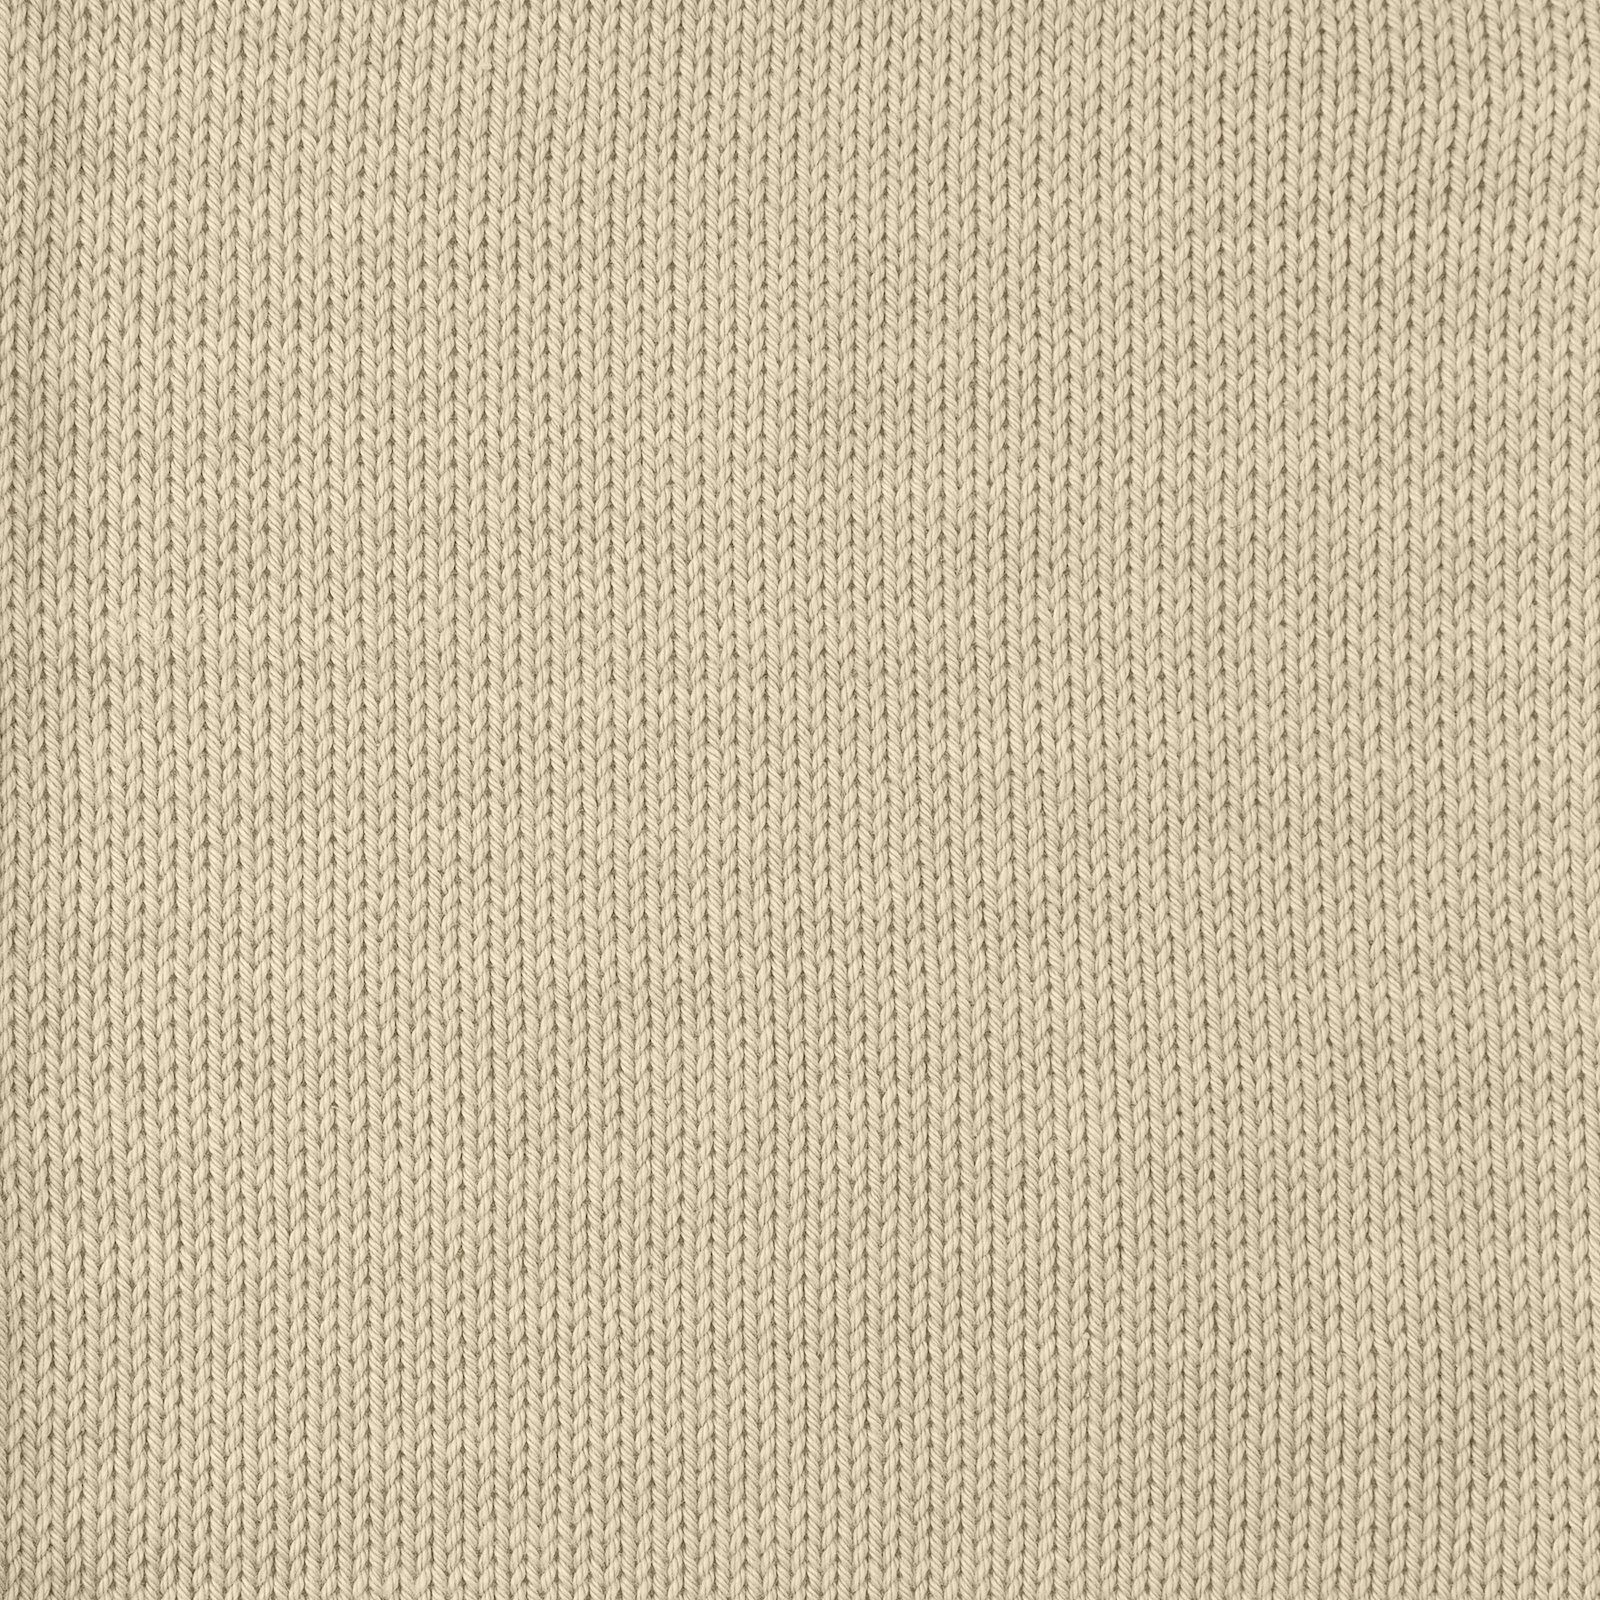 FRAYA, 100% cotton 8/4  yarn  "Colourful", sand 90060038_sskit